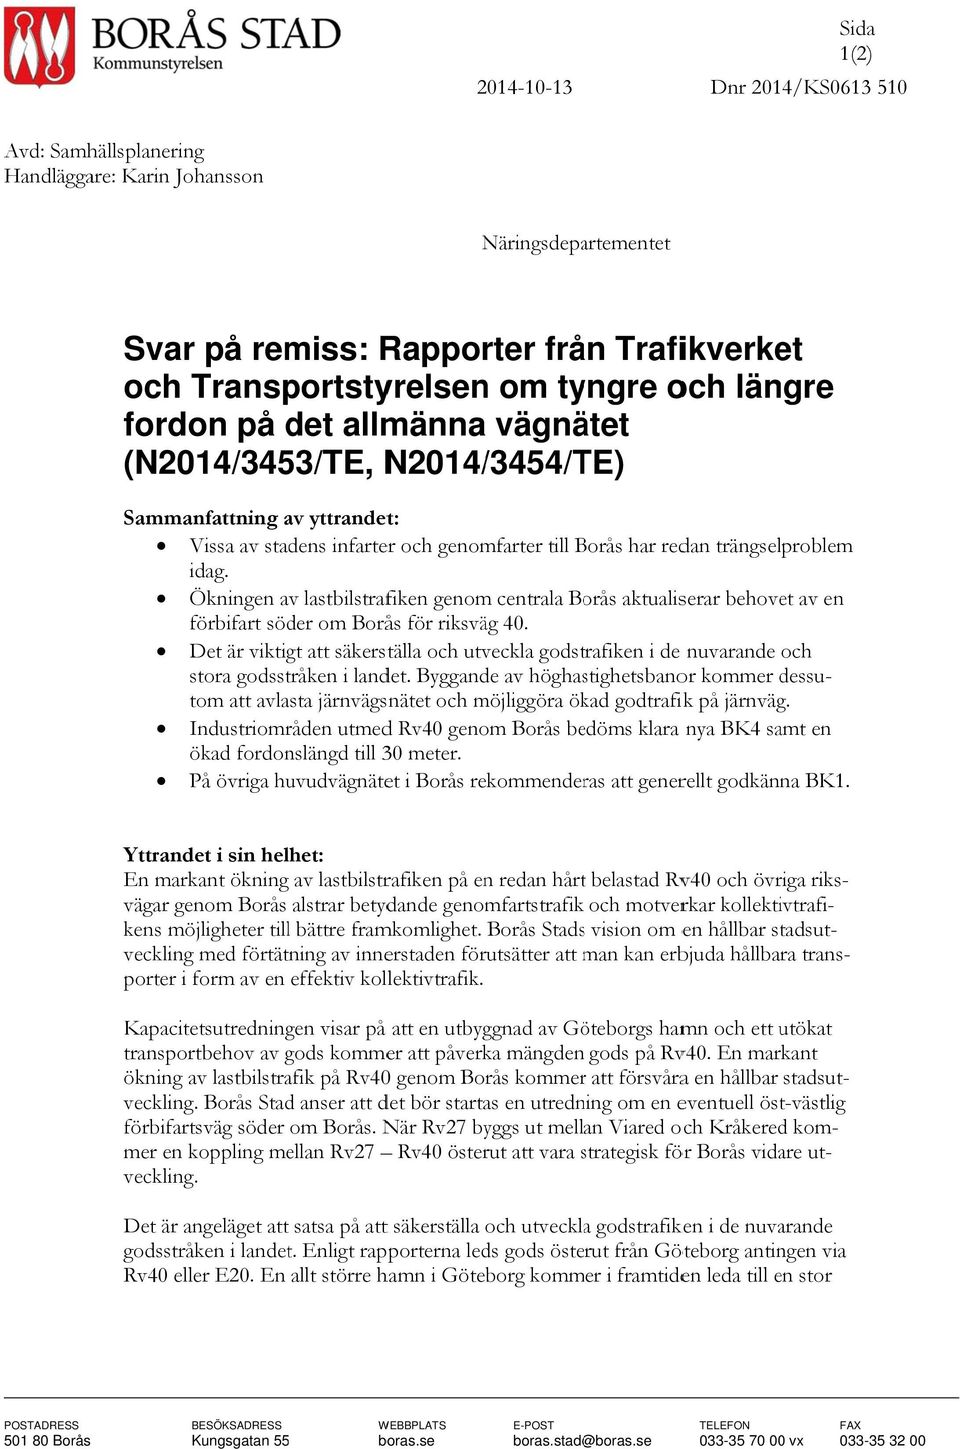 Ökningen av lastbilstrafiken genom centrala Borås aktualiserar behovet av en förbifart söder om Borås för riksväg 40.